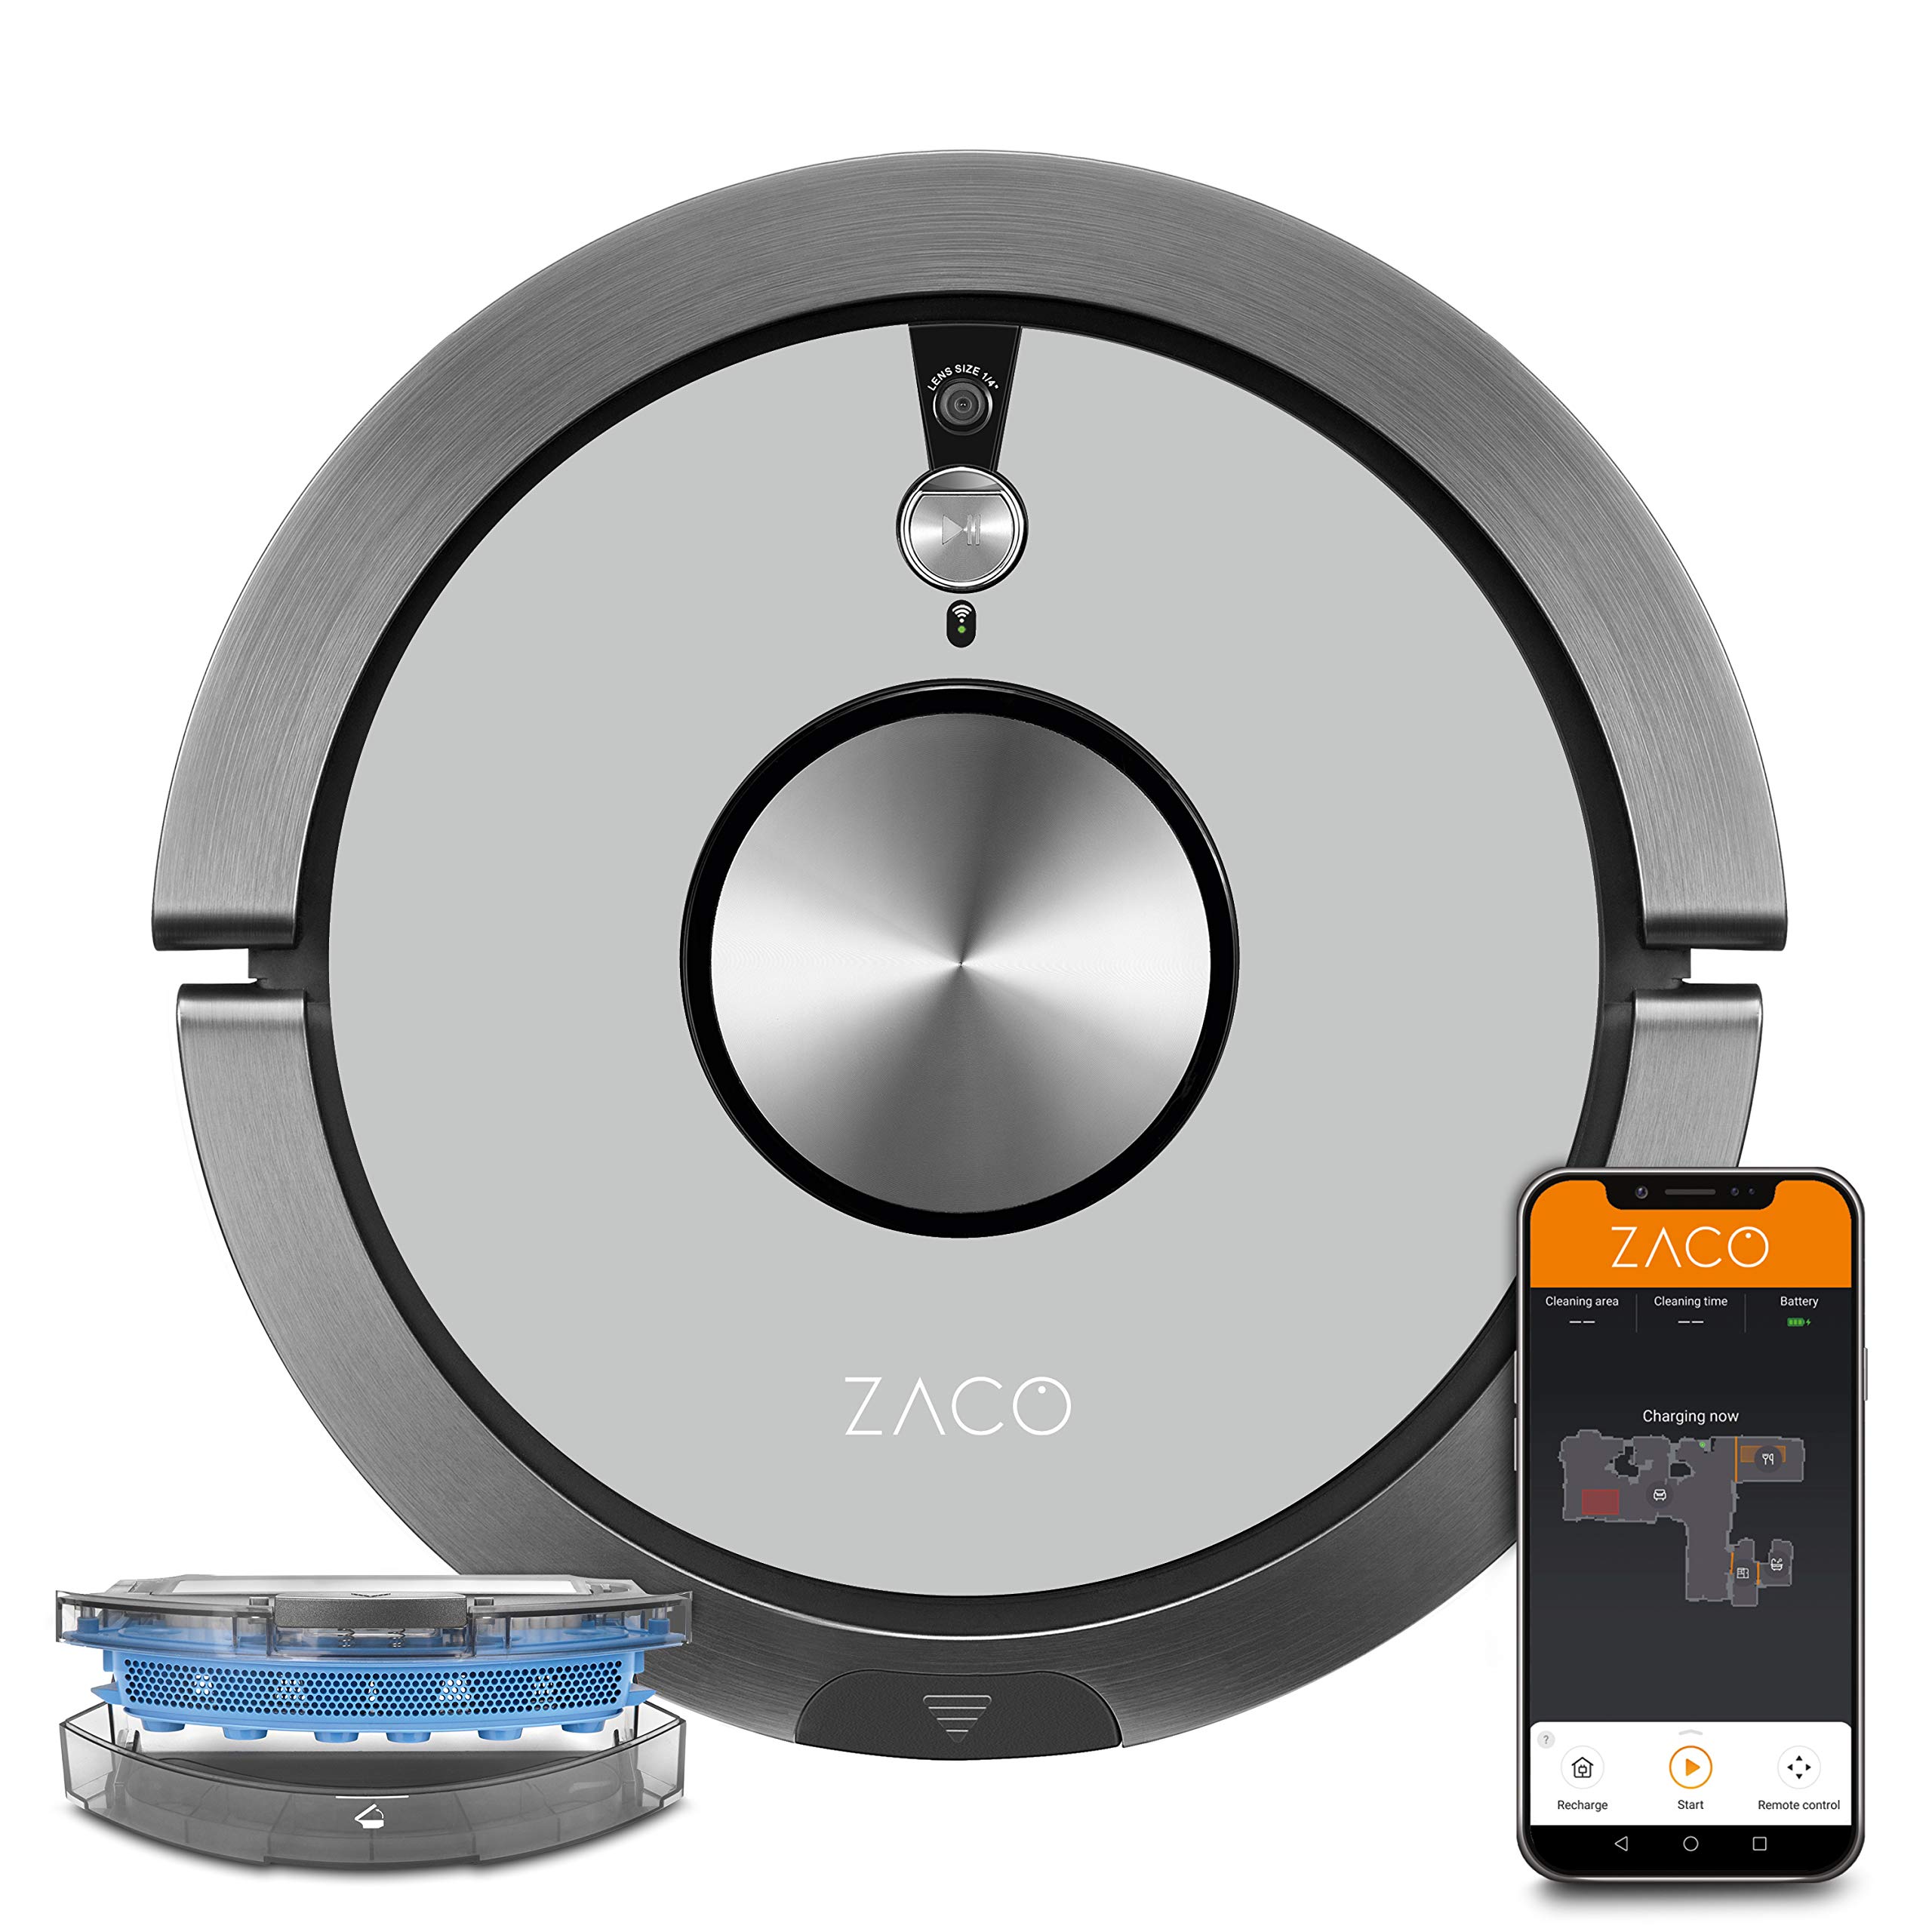 ZACO A9sPro Saugroboter mit Wischfunktion, App & Alexa, Mapping, bis zu 2 Std saugen oder wischen, Staubsauger-Roboter für Hartböden & Teppich, Tierhaare, Roboterstaubsauger mit Ladestation, grey